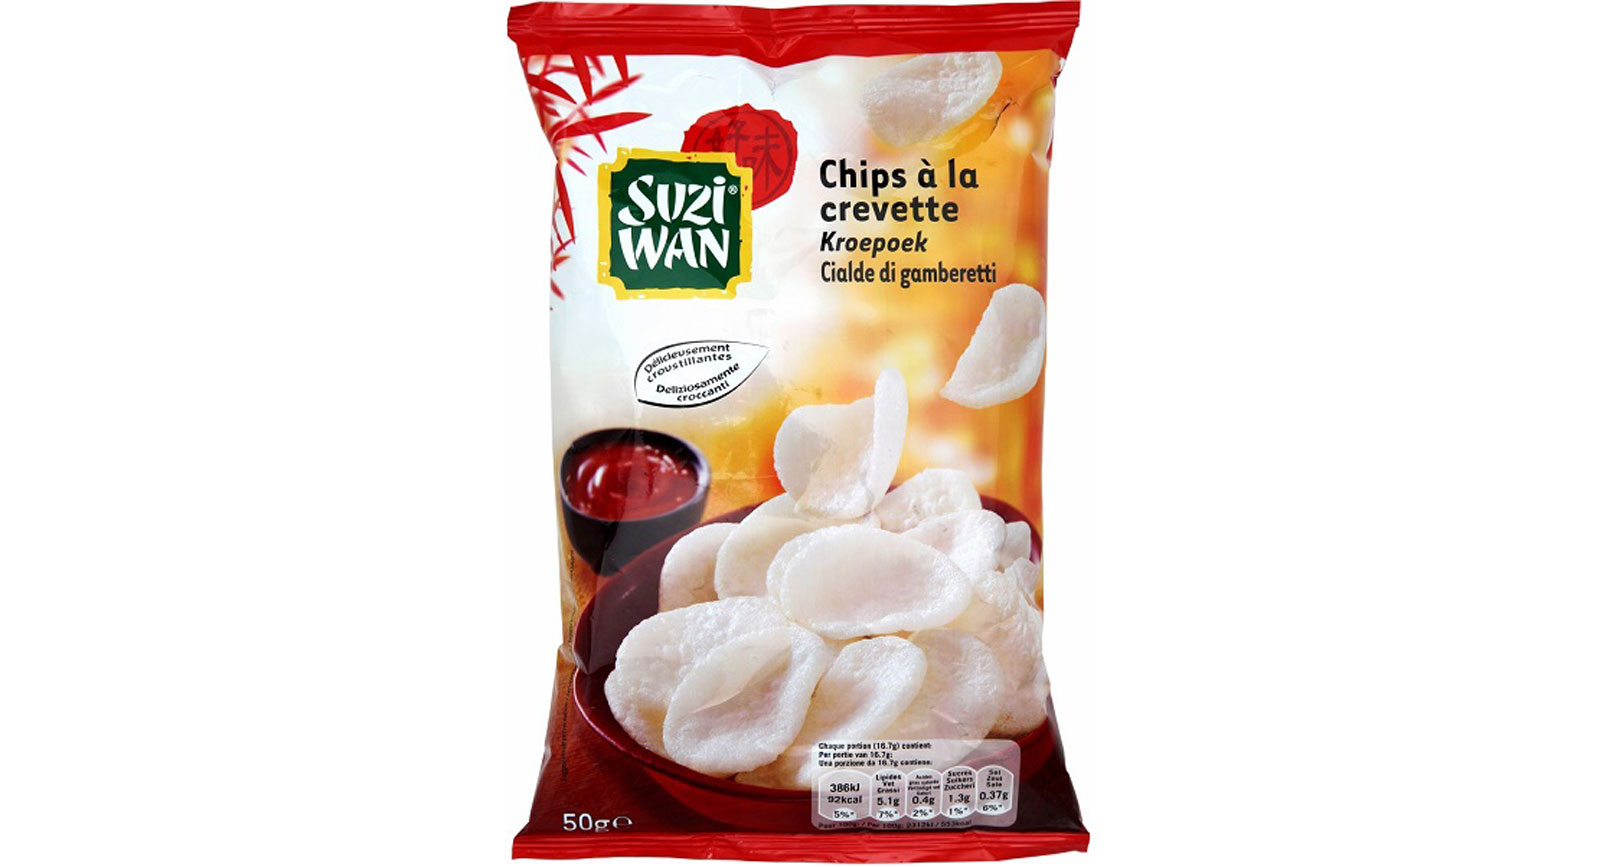 Suzi Wan Chips à la crevette